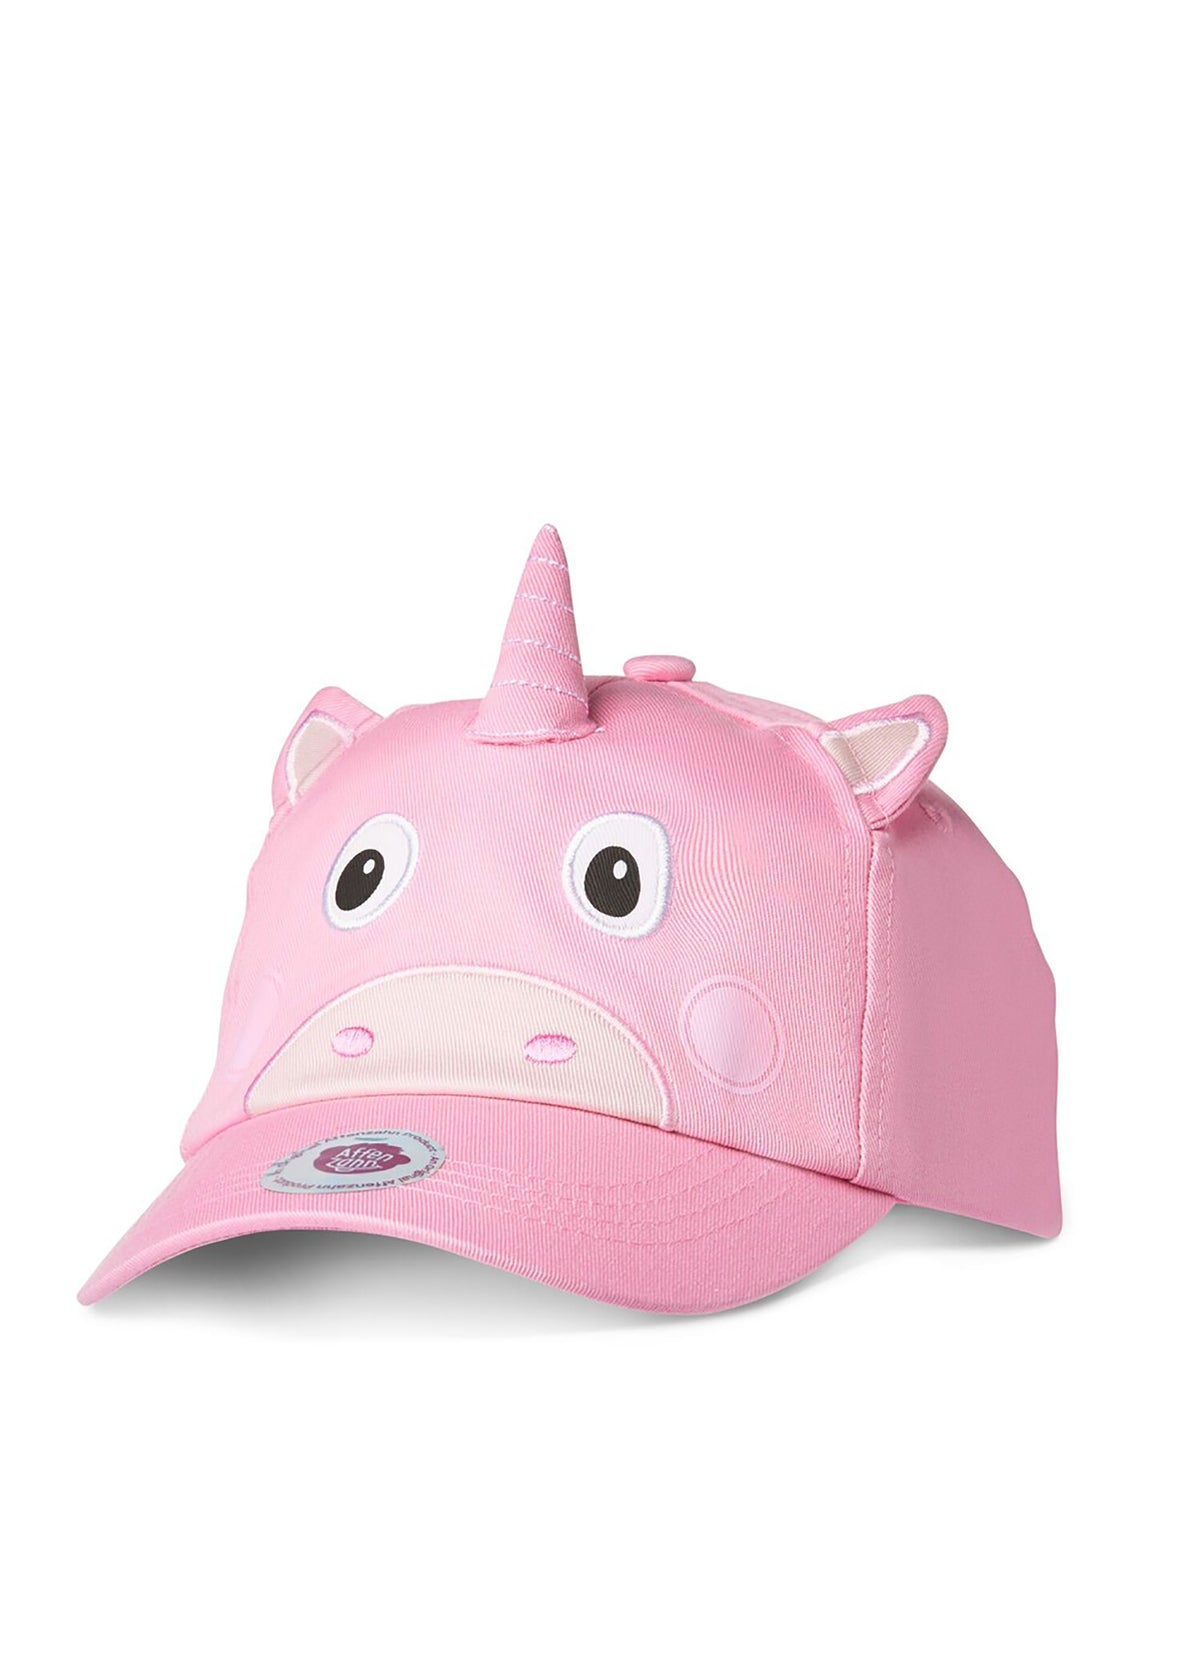 Children's cap - Unicorn